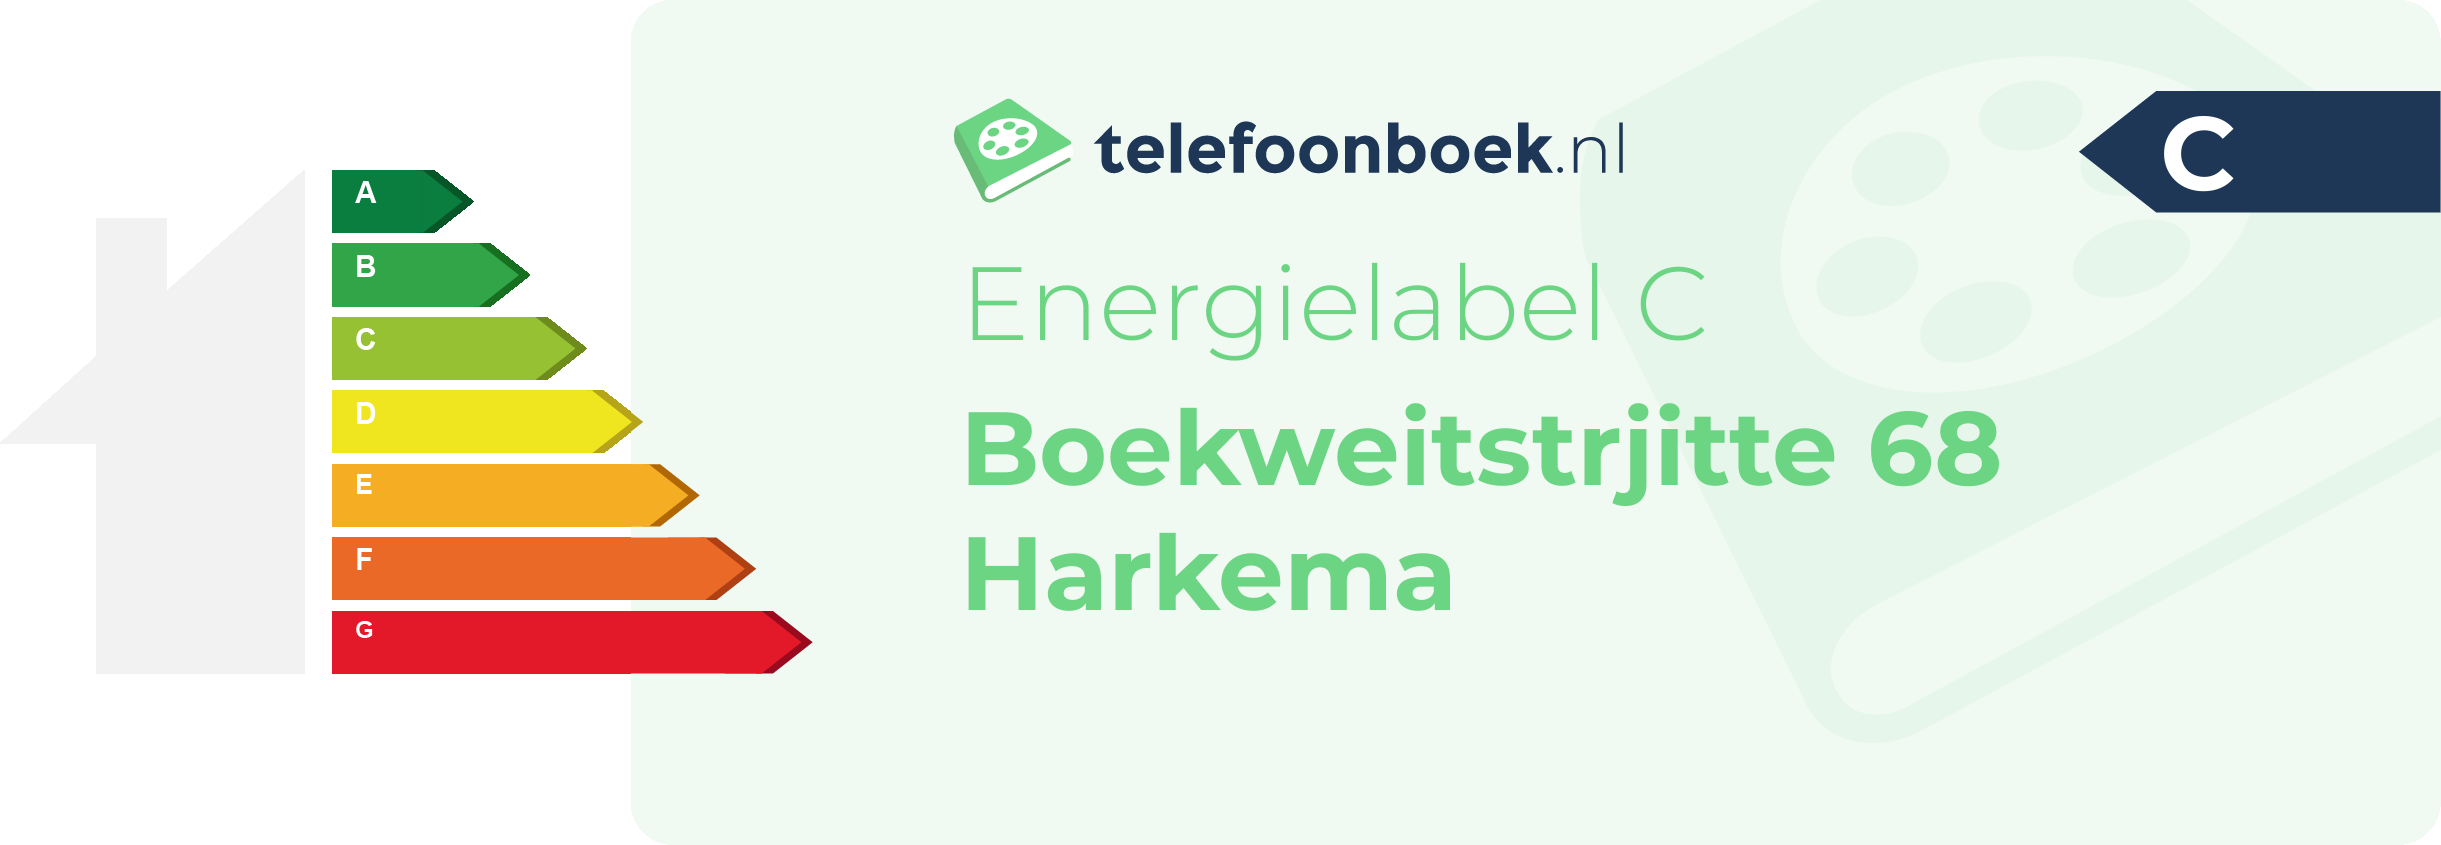 Energielabel Boekweitstrjitte 68 Harkema